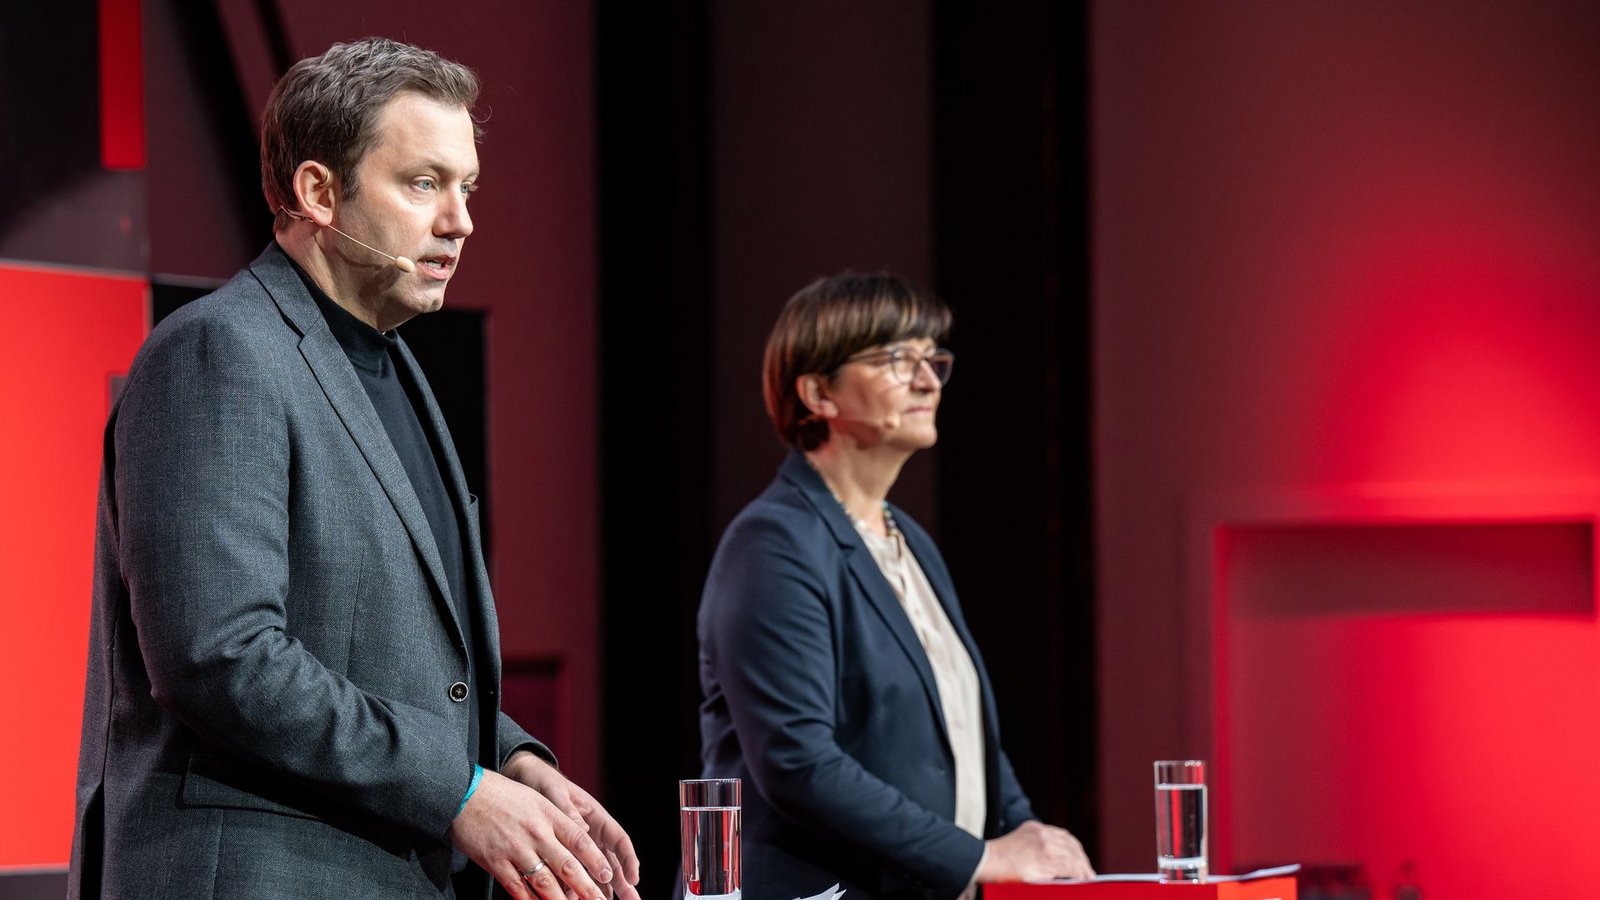 Die SPD-Vorsitzenden Saskia Esken (r) und Lars Klingbeil äußern sich bei einer Pressekonferenz zu der Klausur des SPD-Präsidiums.Foto: Bernd von Jutrczenka/dpa